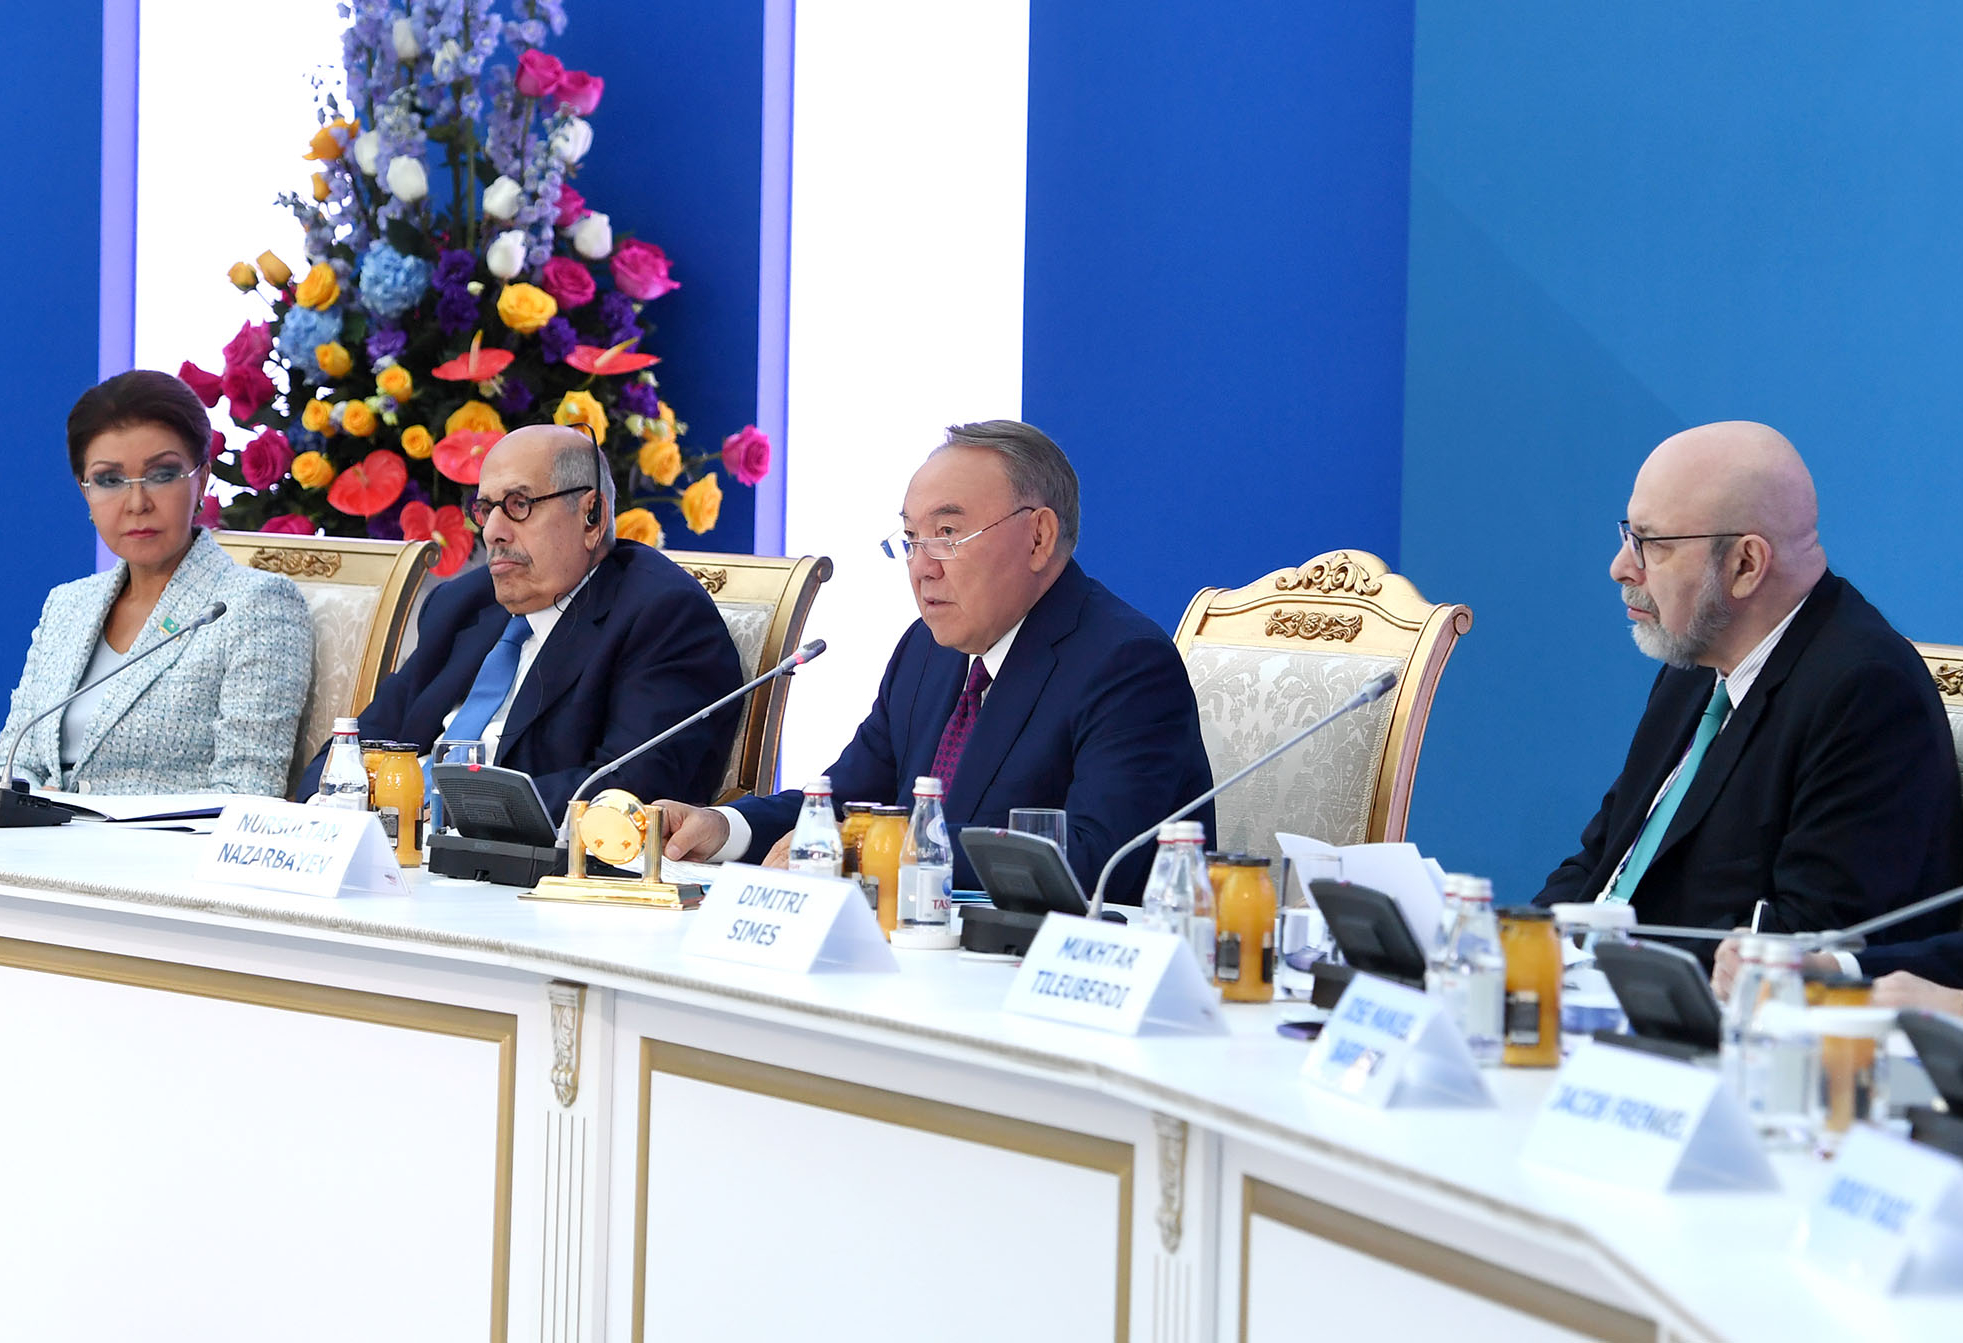 Қазақстанның Тұңғыш Президенті – Елбасы Нұрсұлтан Әбішұлы  Назарбаев